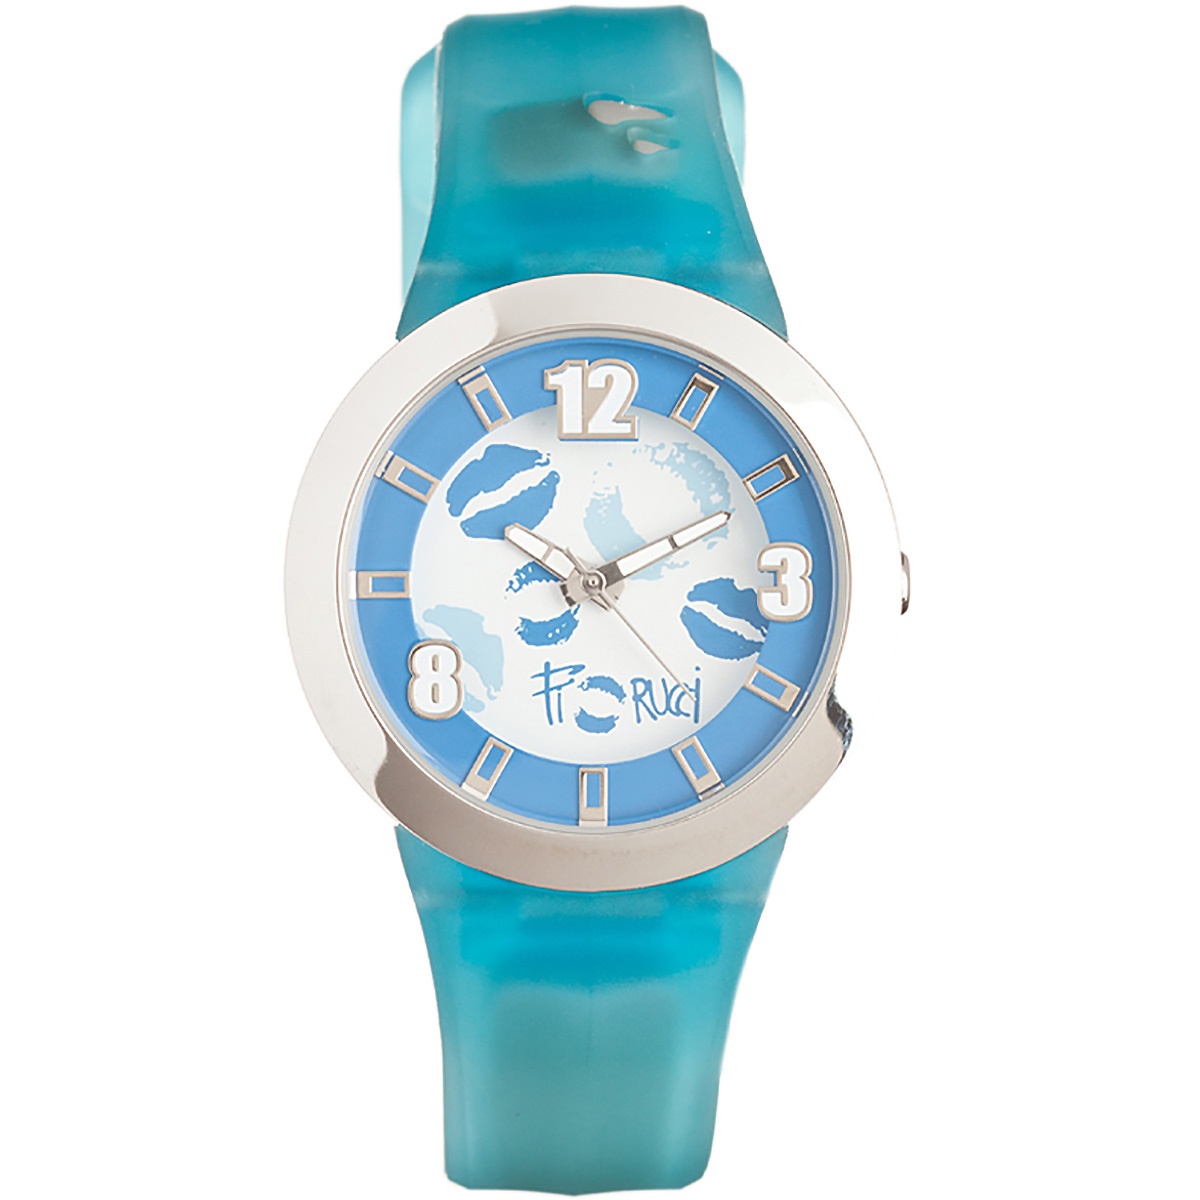 Fiorucci Uhr FR070_3 Kinderuhr Blau Silber Children's Watch NEU & OVP